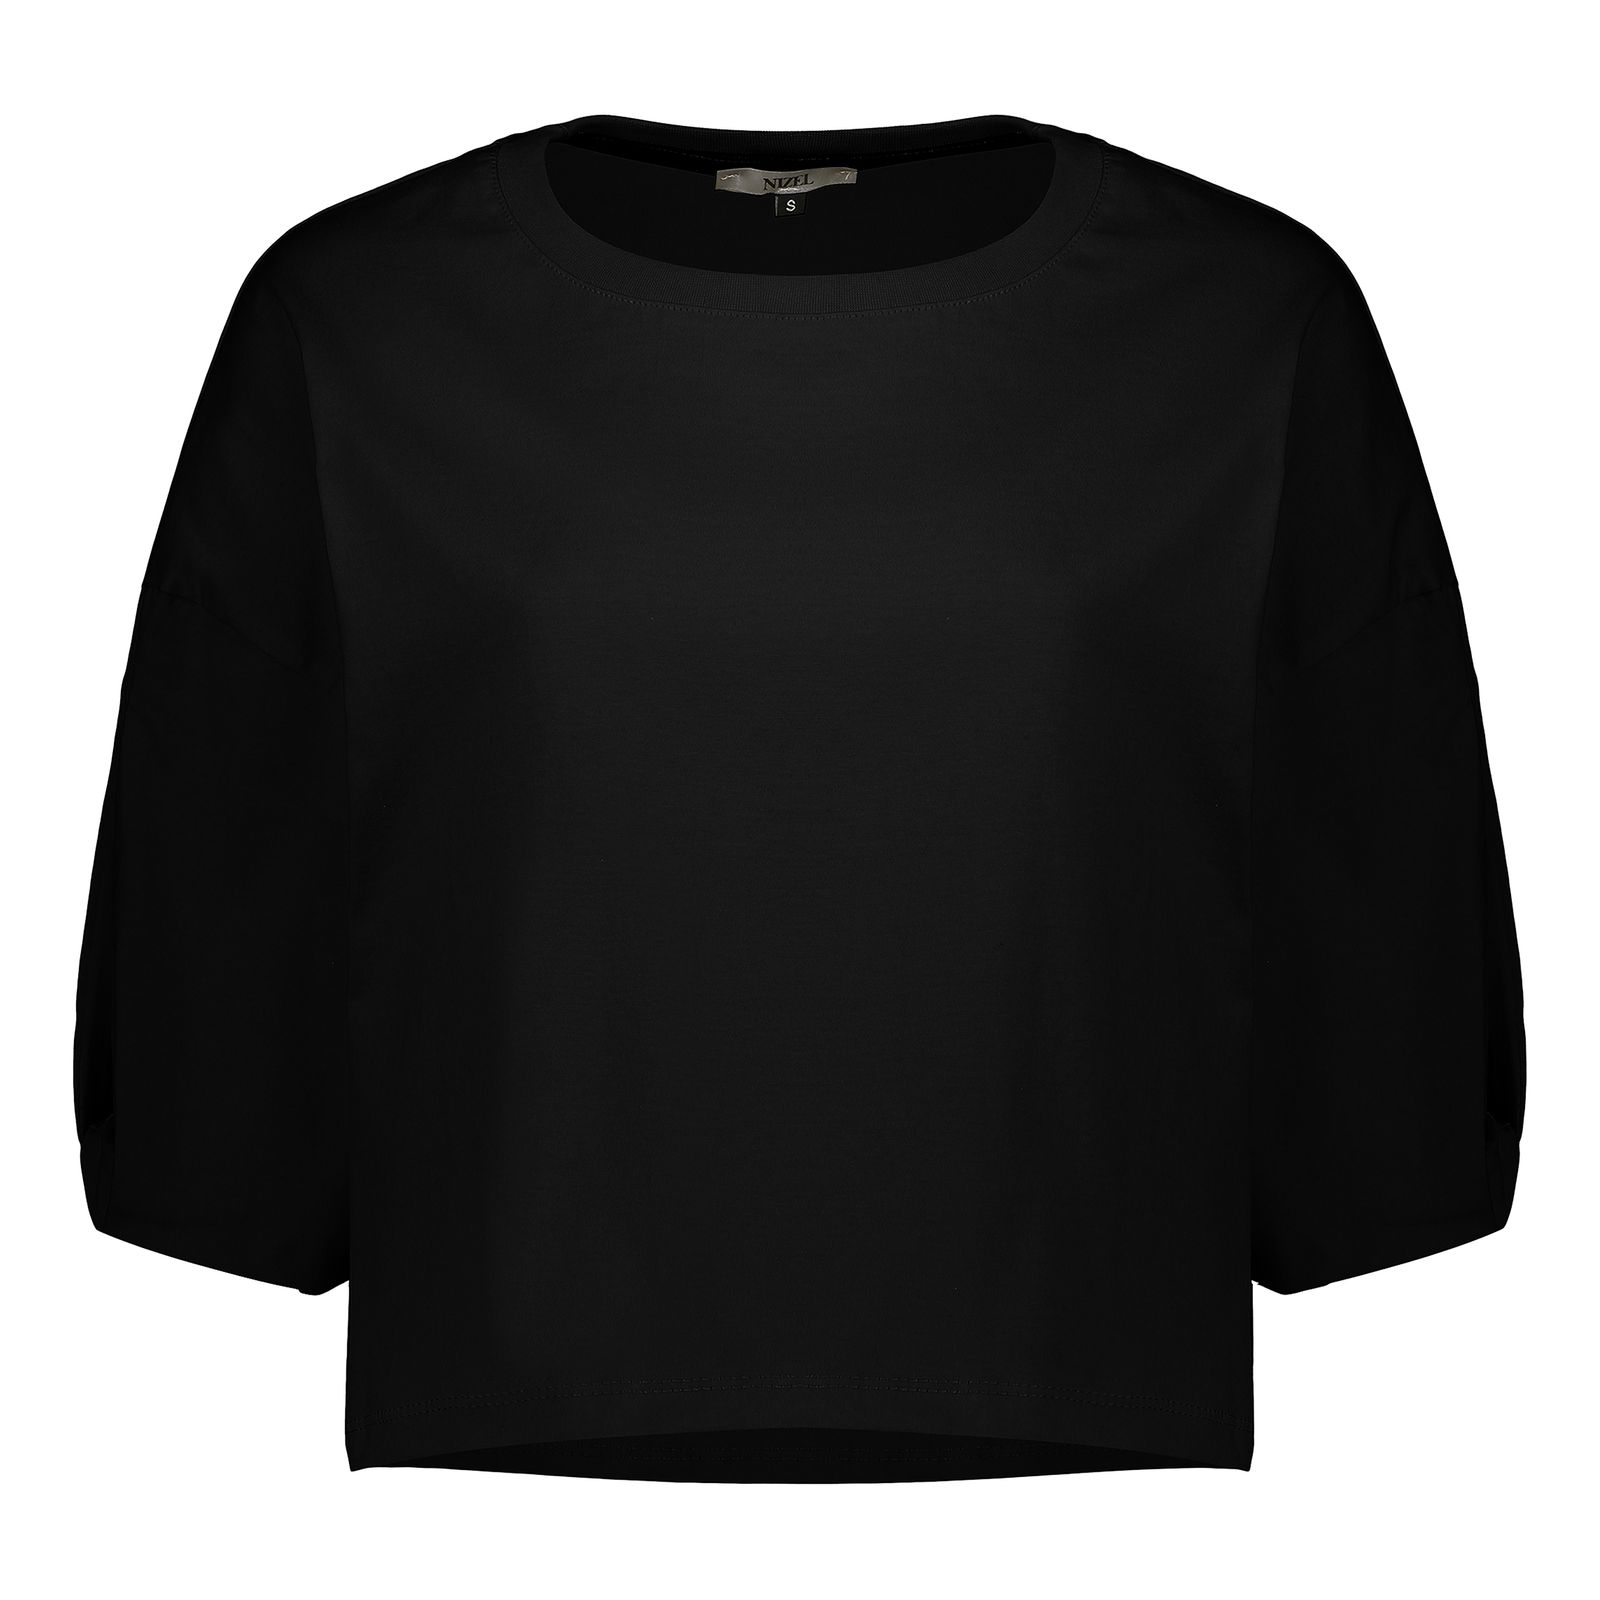 کراپ تی شرت آستین کوتاه زنانه نیزل مدل 0690-002 رنگ مشکی -  - 1